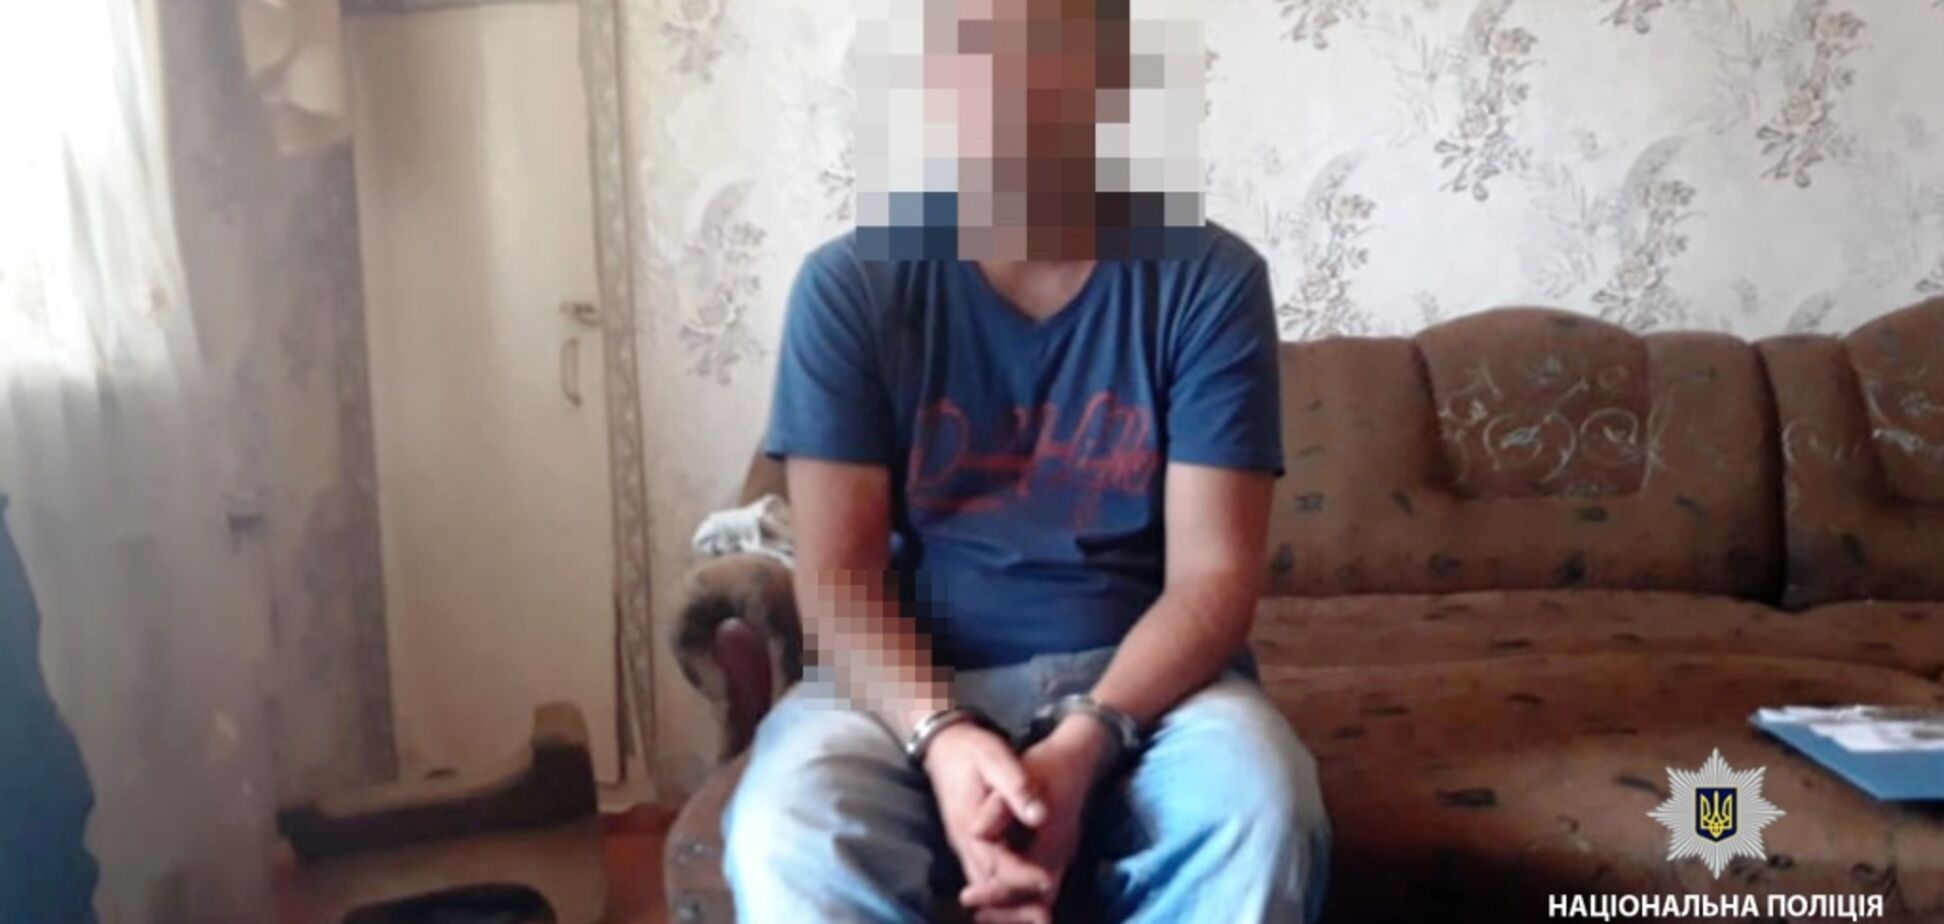 Похитил и изнасиловал мальчика: на Одесщине задержали педофила